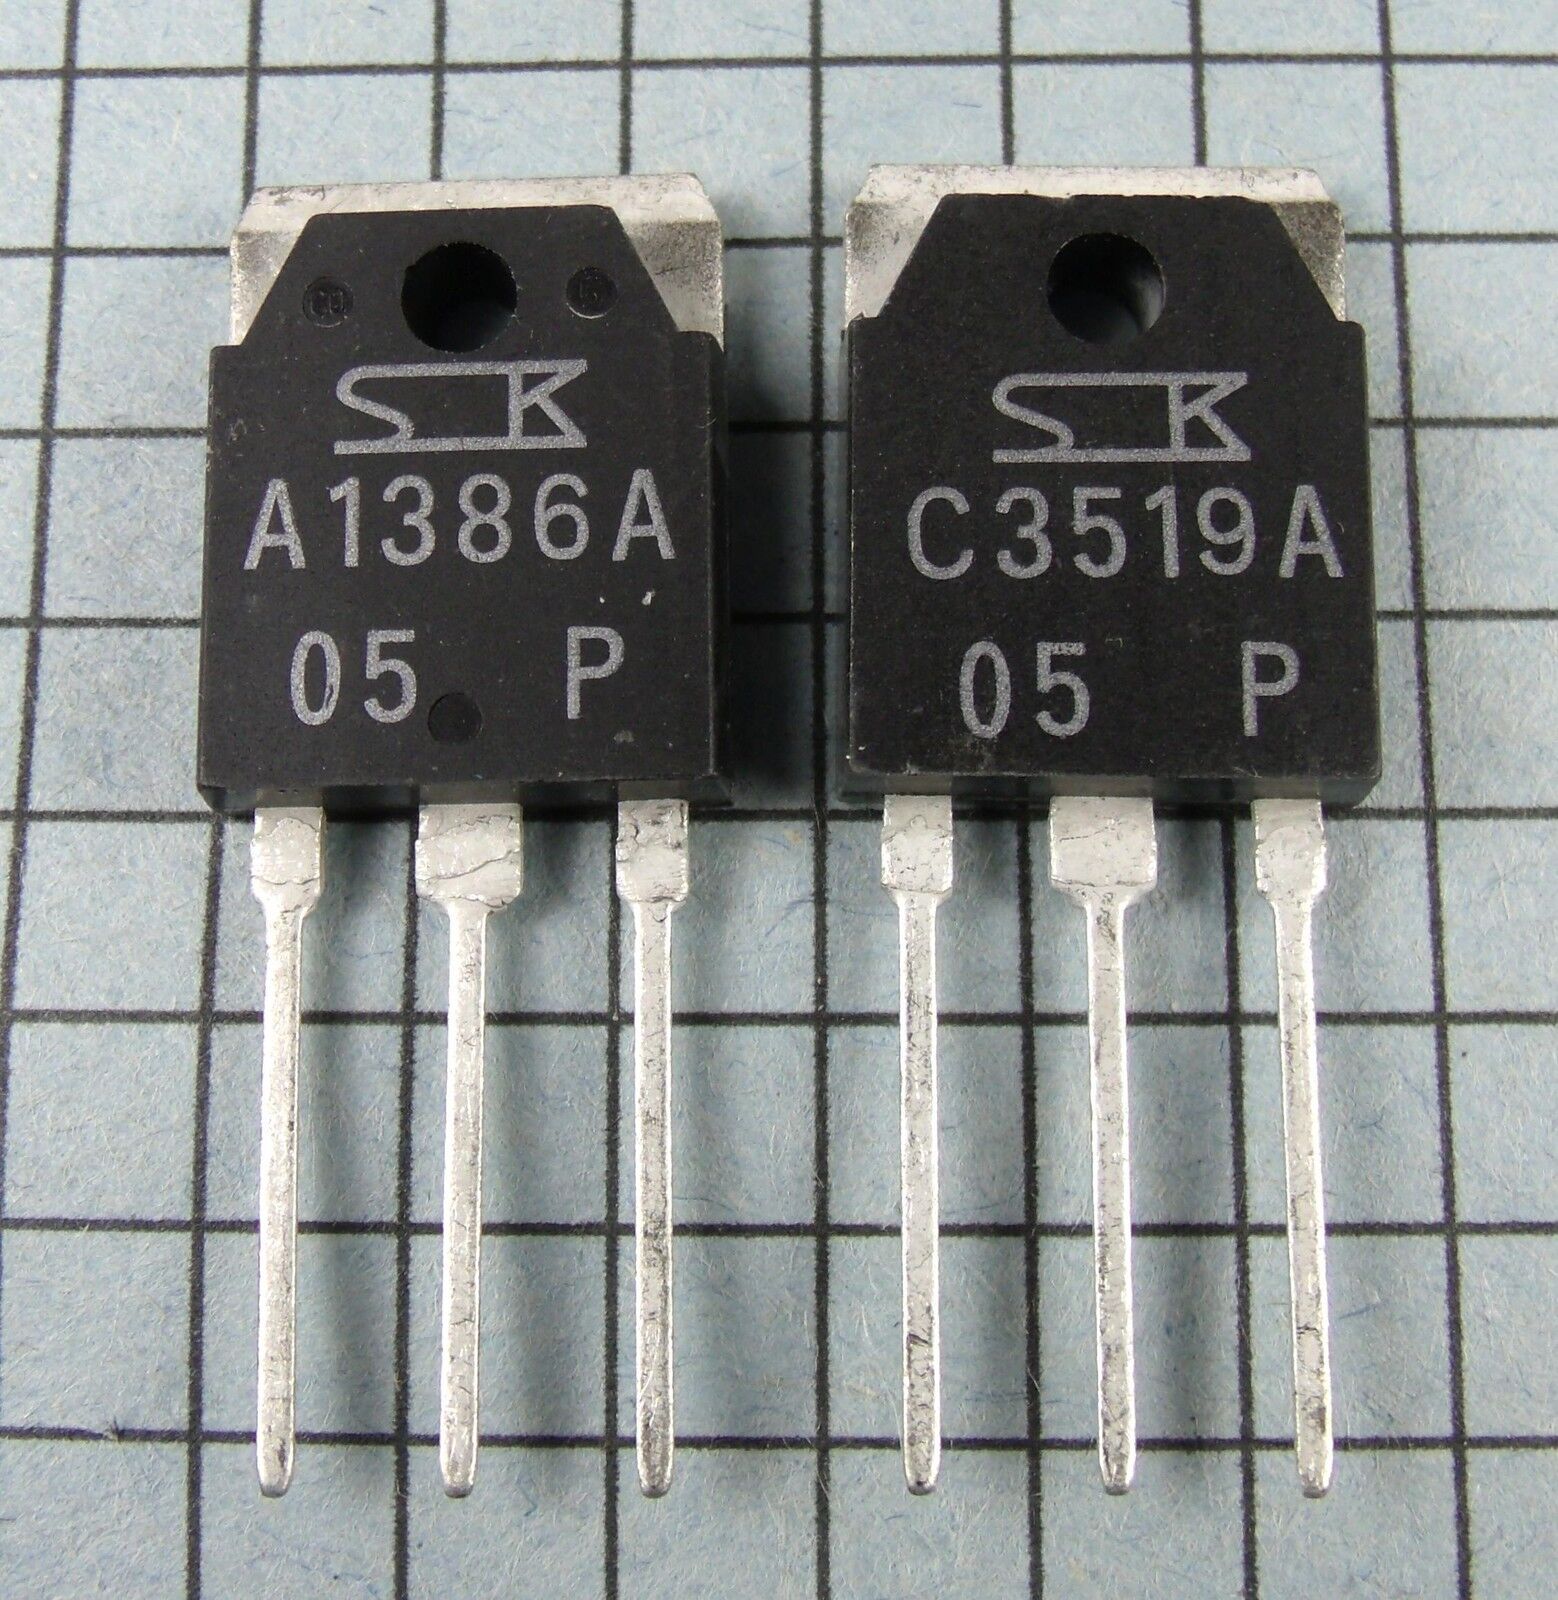 2SA1386A & 2SC3519A, A1386A / C3519A Power Transistors : 1 pair per Lot